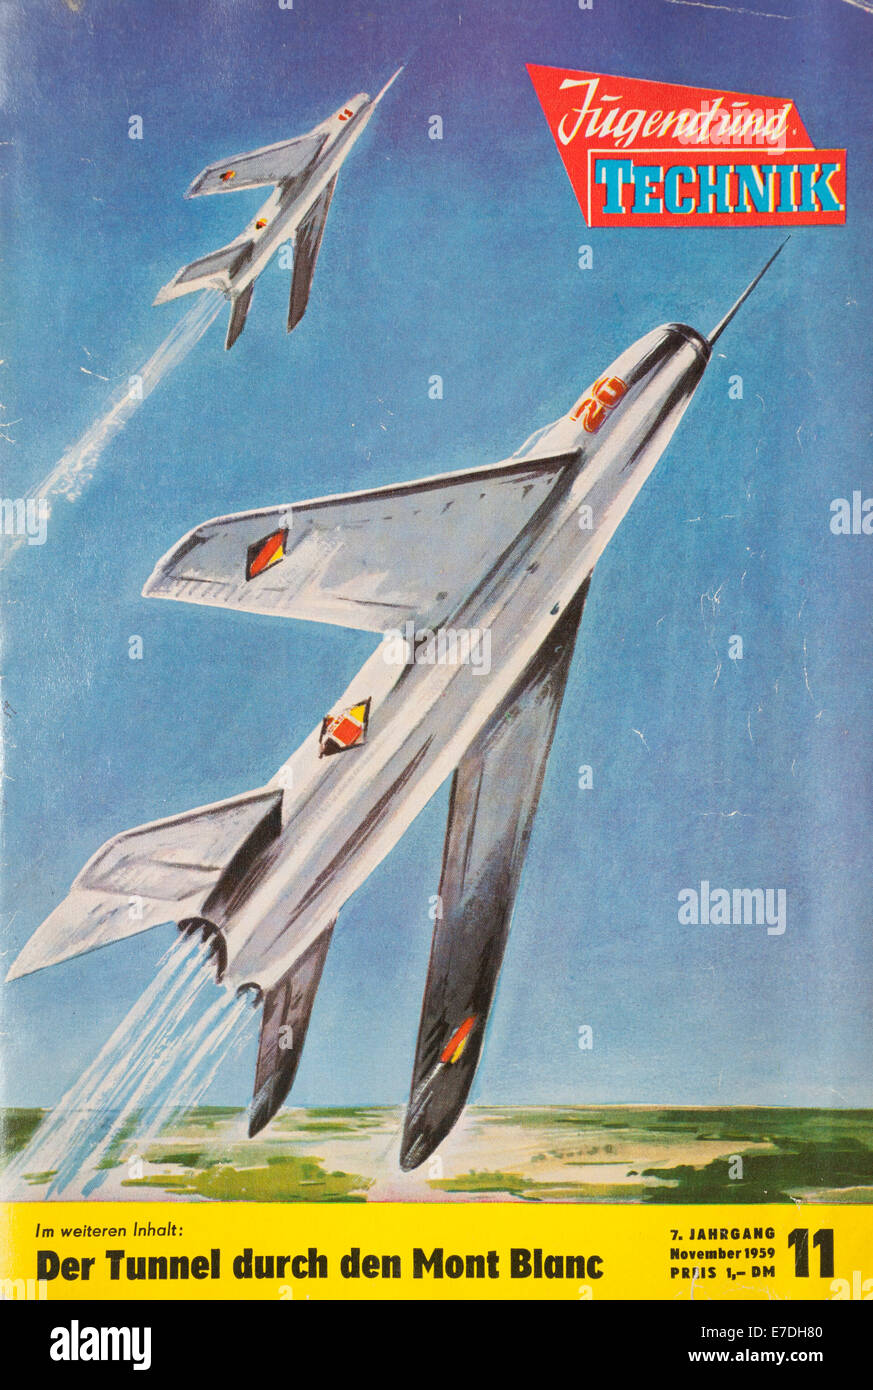 L'illustration de la couverture de l'édition de novembre 1959 du magazine "La jeunesse et la technologie" montre deux russe MIG 21 jet supersonique d'avions de chasse. Le MIG 21 est le plus-produit des avions de combat dans le monde. Ce numéro présente l'armée de l'air de l'Armée Populaire Nationale (NVA) de la RDA. Le magazine a été publié par le Conseil Central de la Jeunesse Libre Allemande (FDJ). Photo : Sammlung Sauer - AUCUN SERVICE DE FIL- Banque D'Images